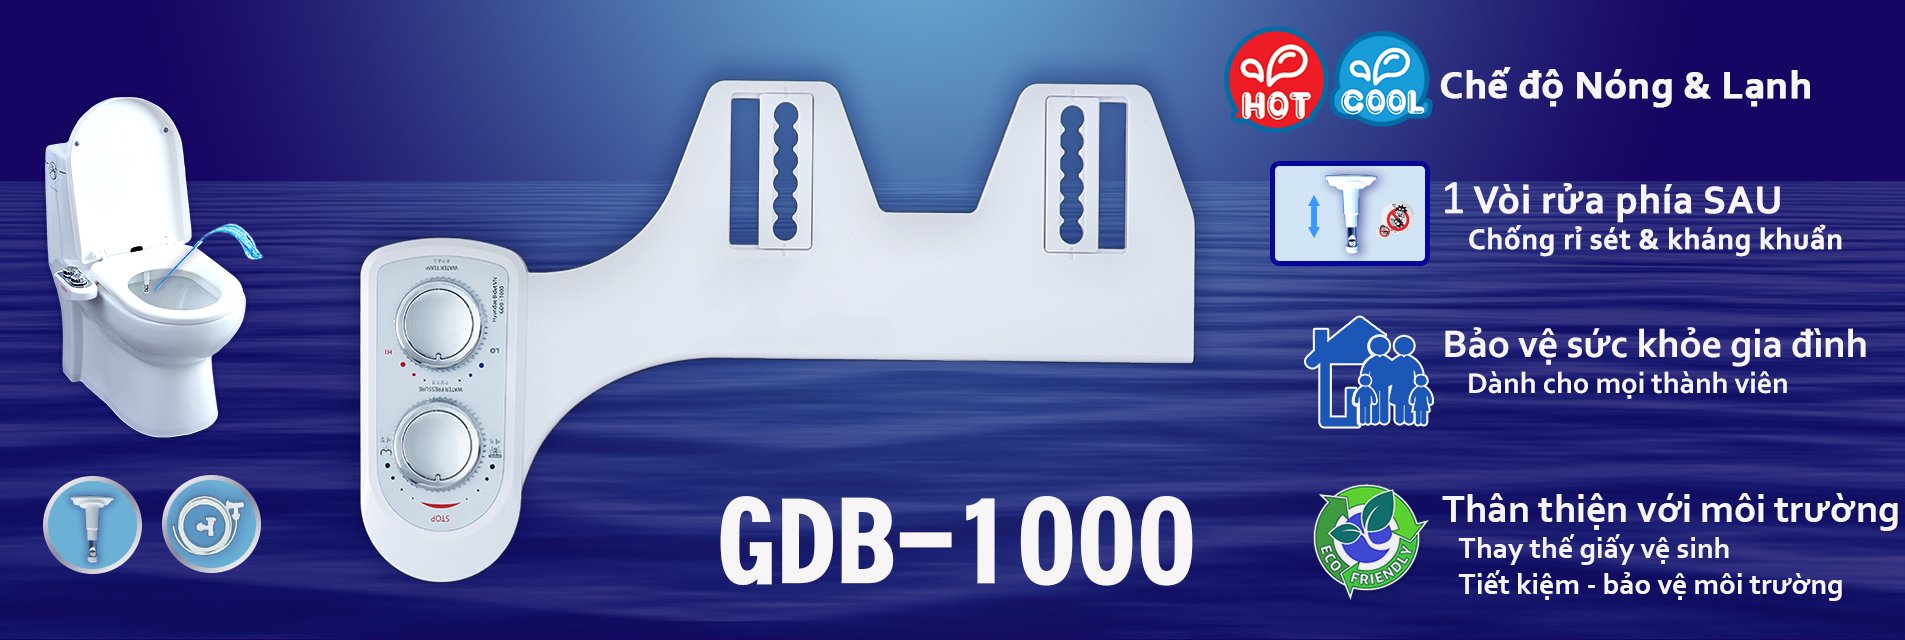 GDB-1000 Sản phẩm rời dành cho cả gia đình